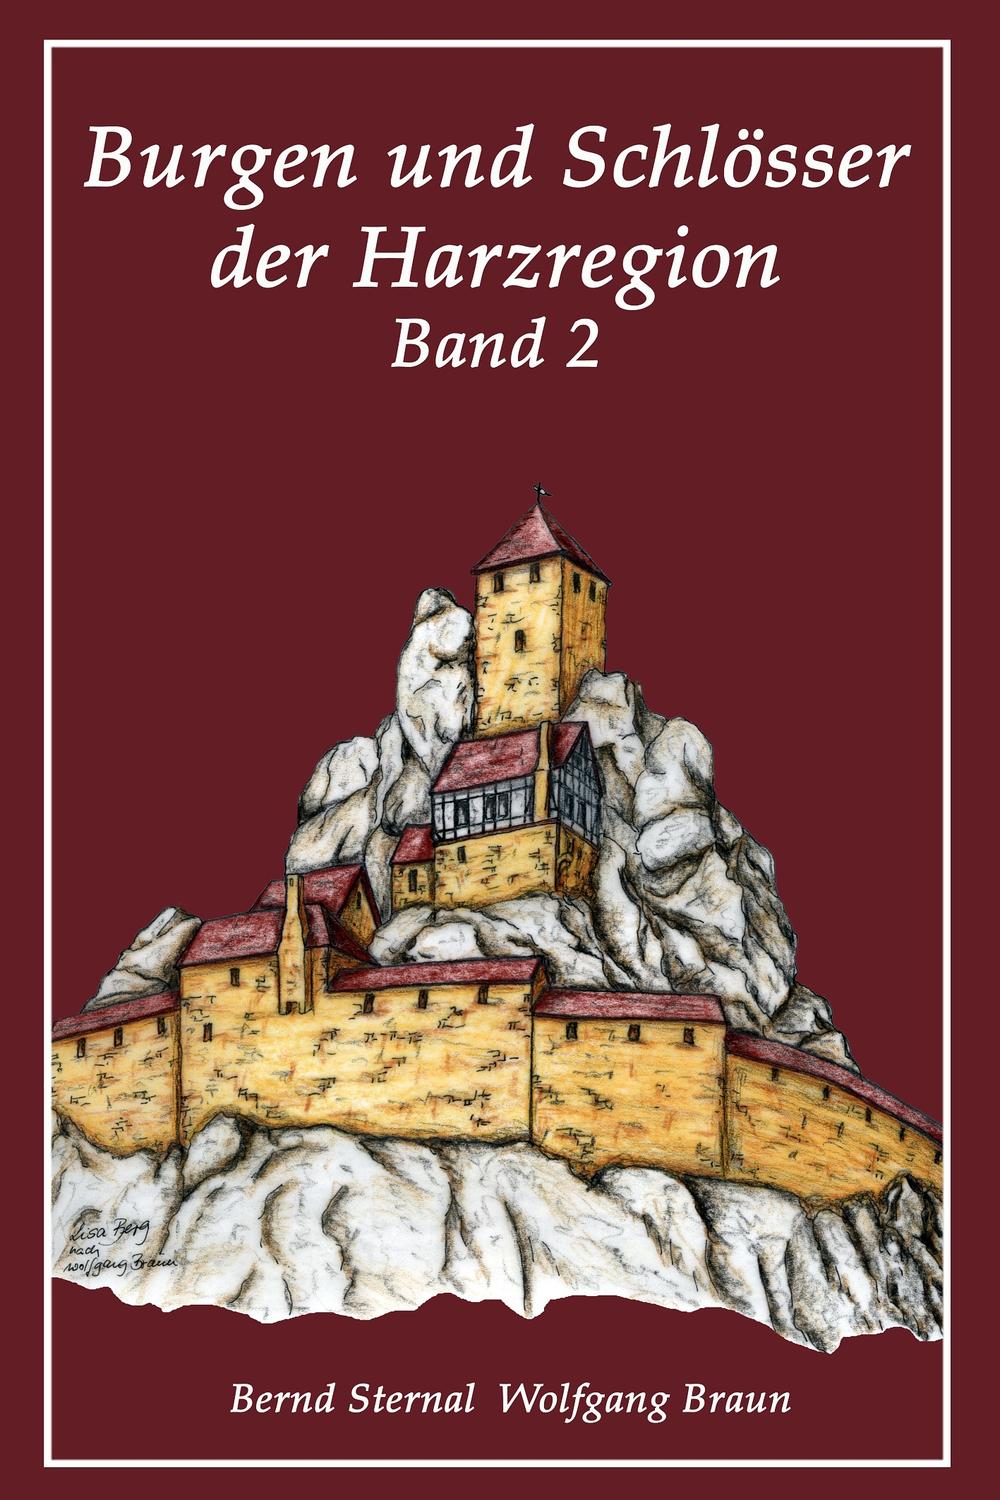 Burgen und Schlösser der Harzregion 2 - Bernd Sternal, Wolfgang Braun